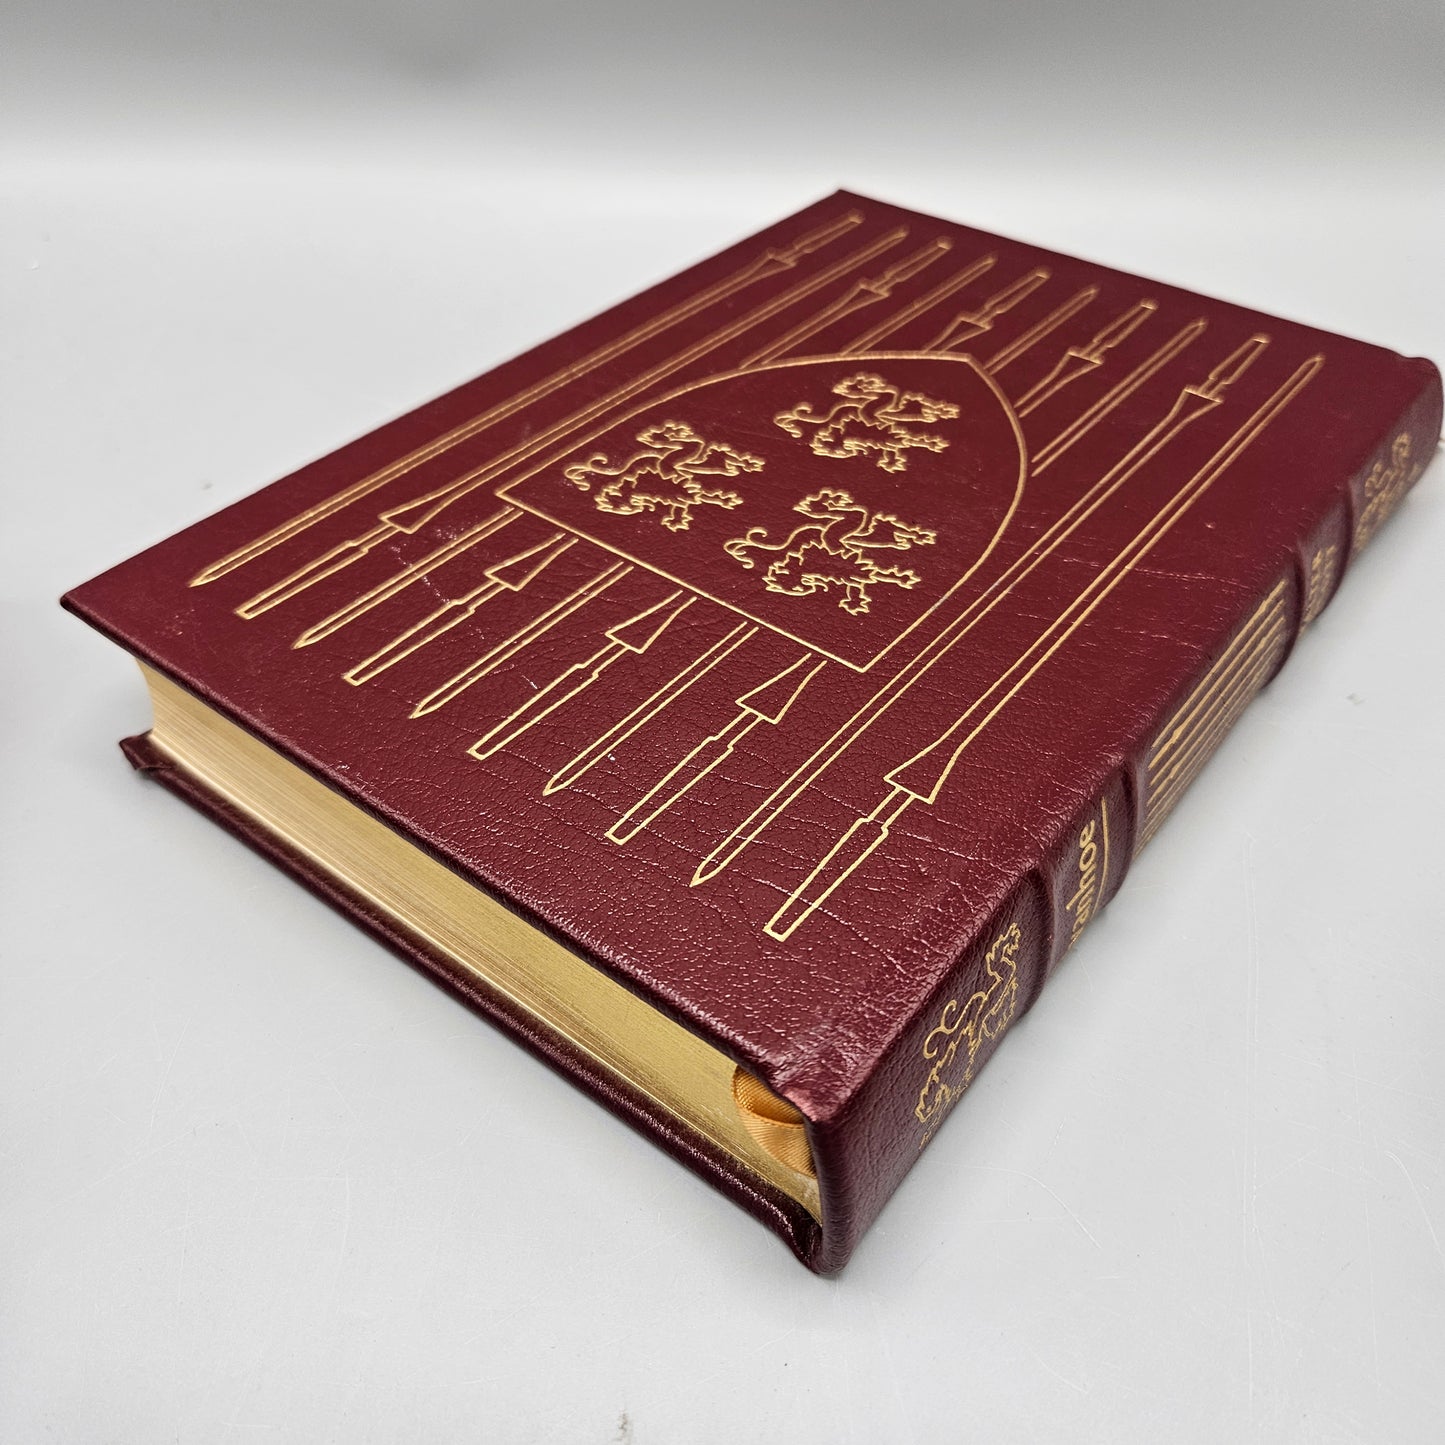 Leatherbound Book - Sir Walter Scott "Ivanhoe" Easton Press